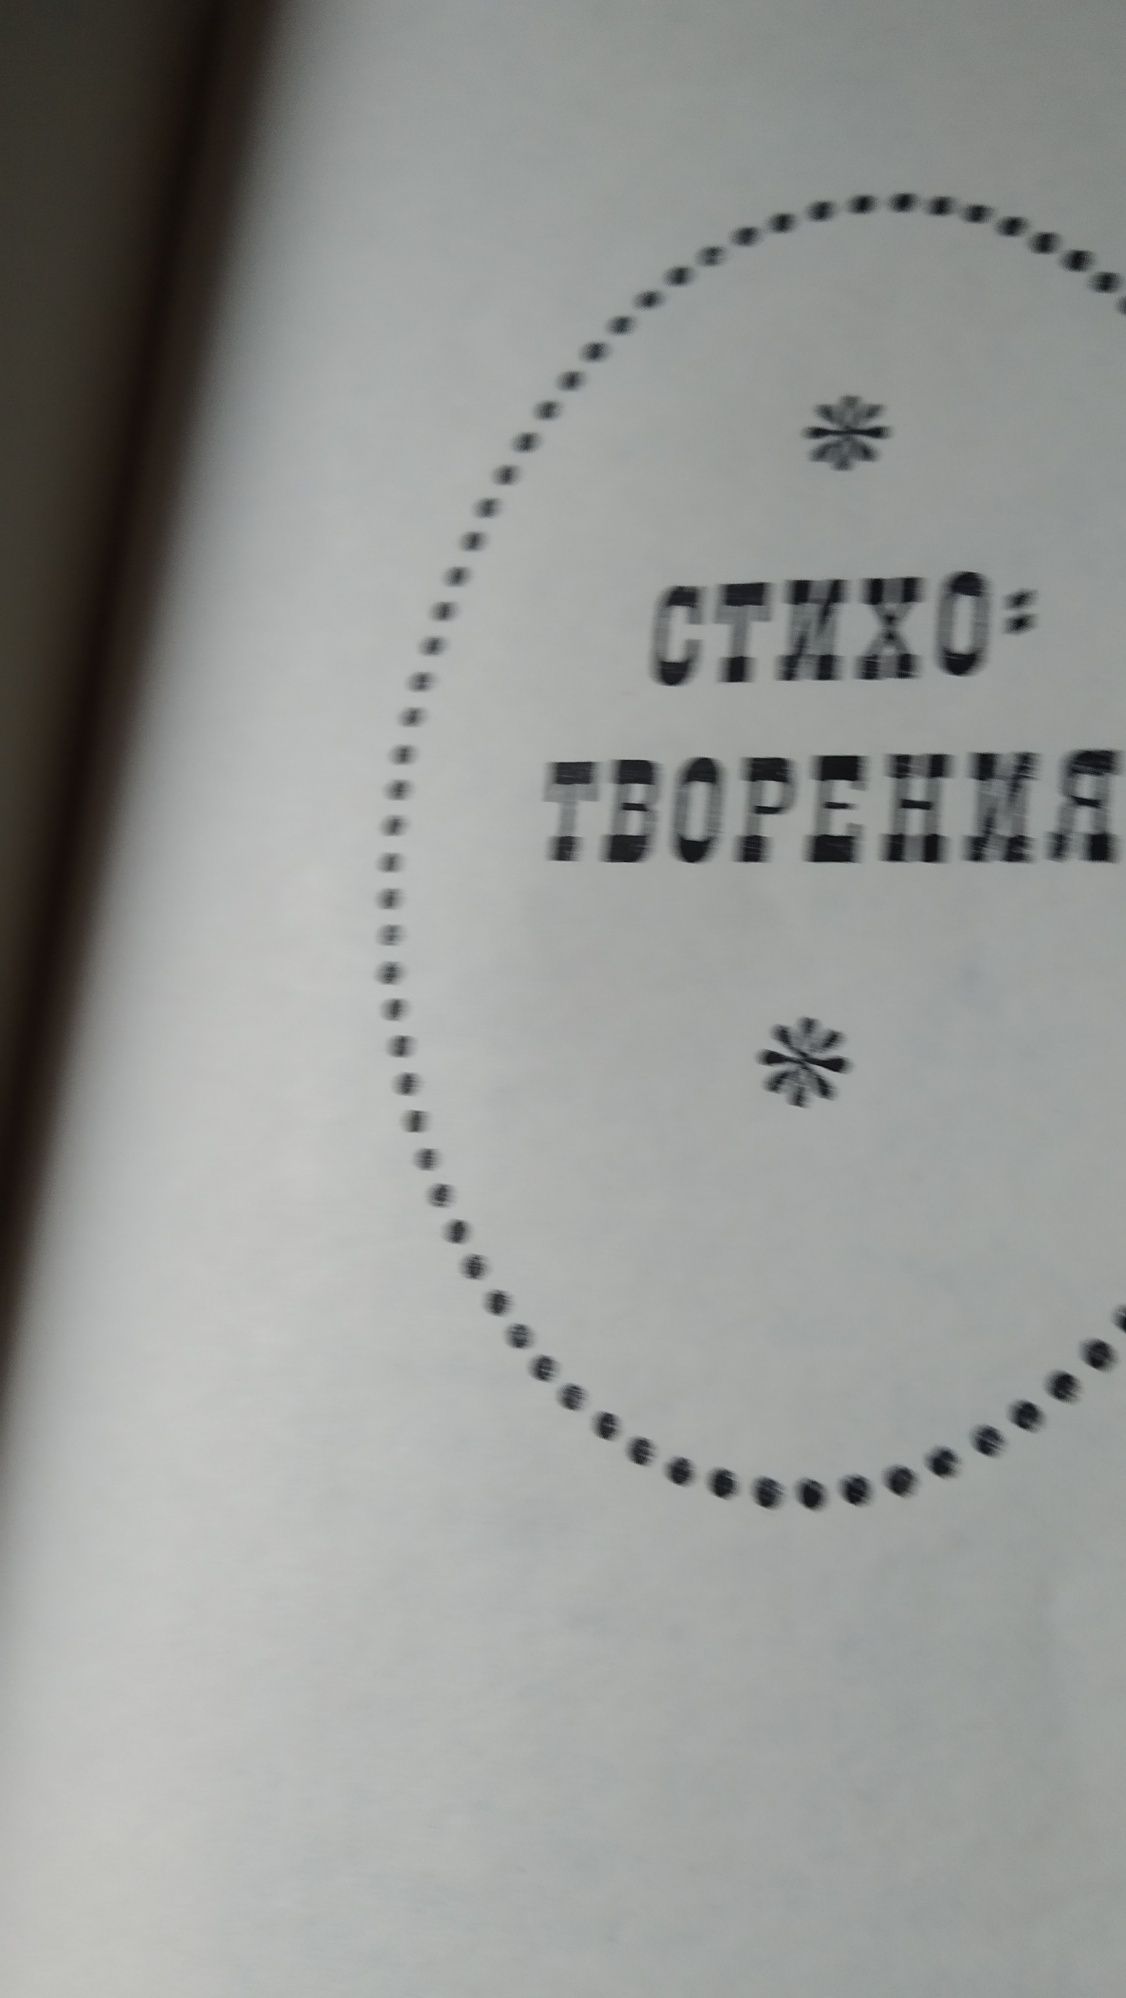 И. А.  Крылов. Собрание сочинений  в 2-х томах. Издание 1969 года.